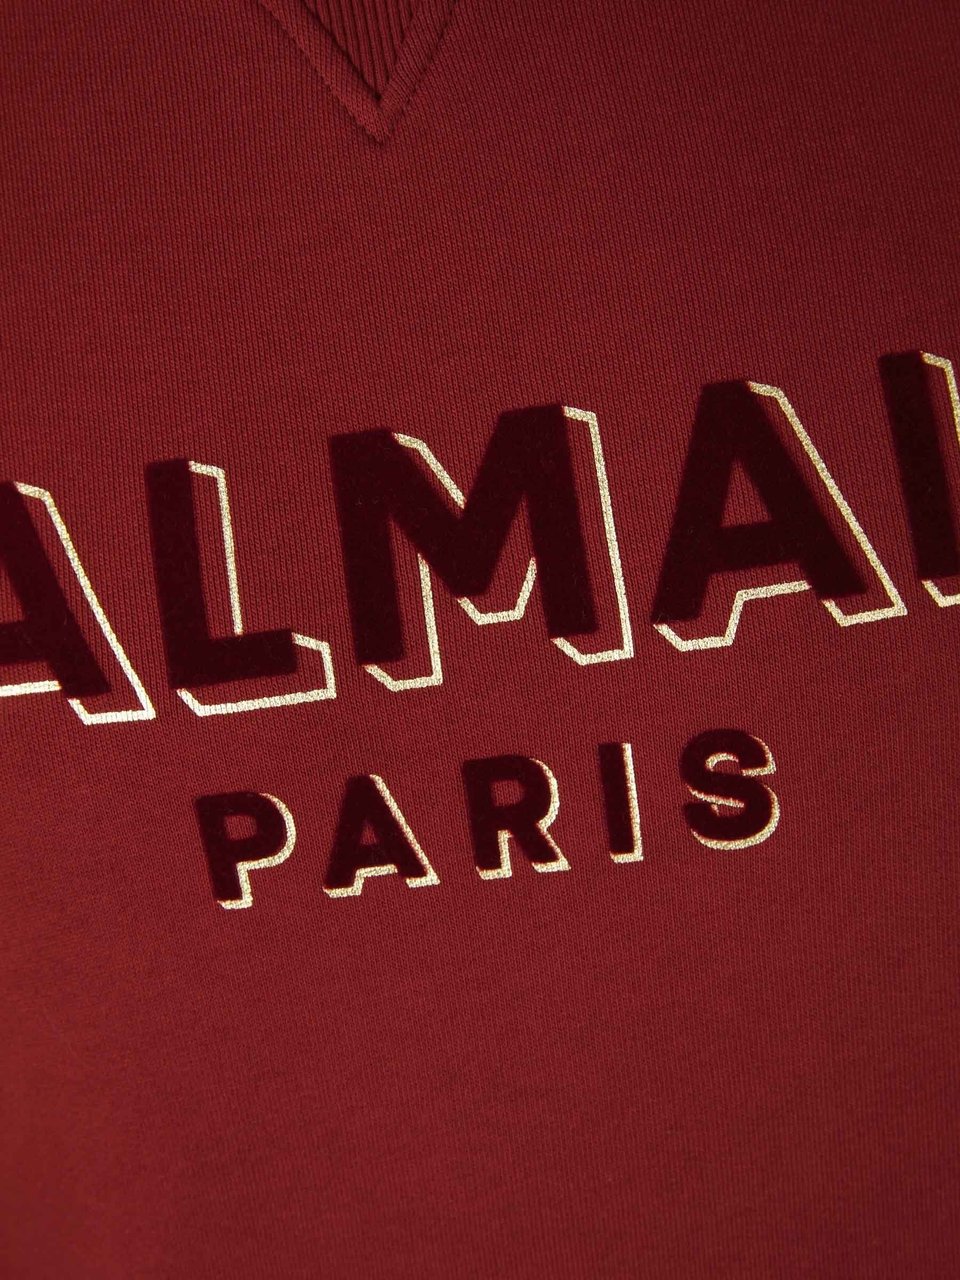 Balmain Embossed Logo Sweatshirt Rood